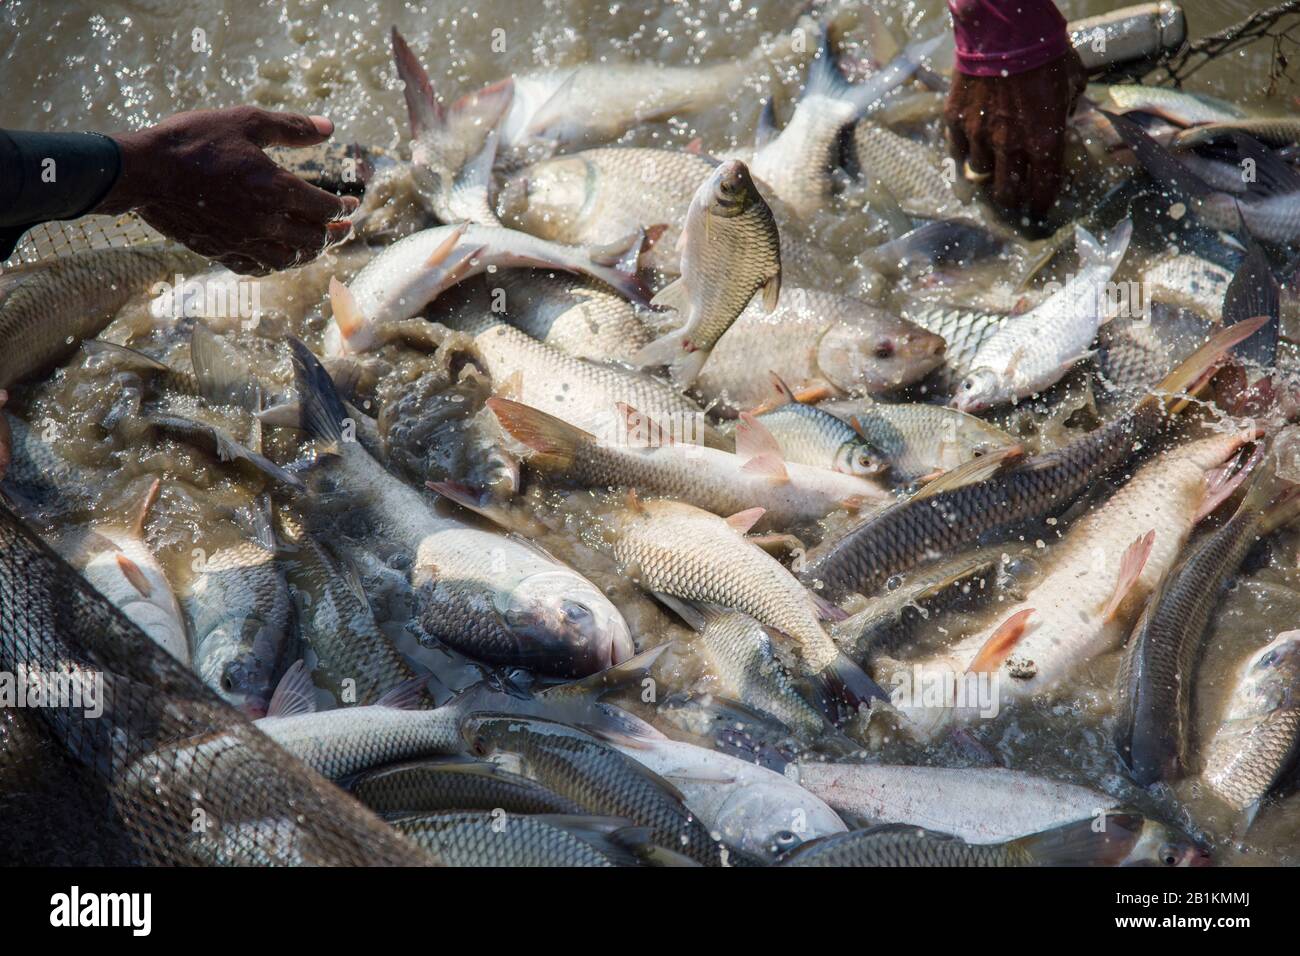 La carpa è la specie ittica appartenente alla famiglia dei Cyprinidae e originaria dell'Asia e dell'Europa orientale. I pesci stanno saltando durante la raccolta nello stagno. Foto Stock